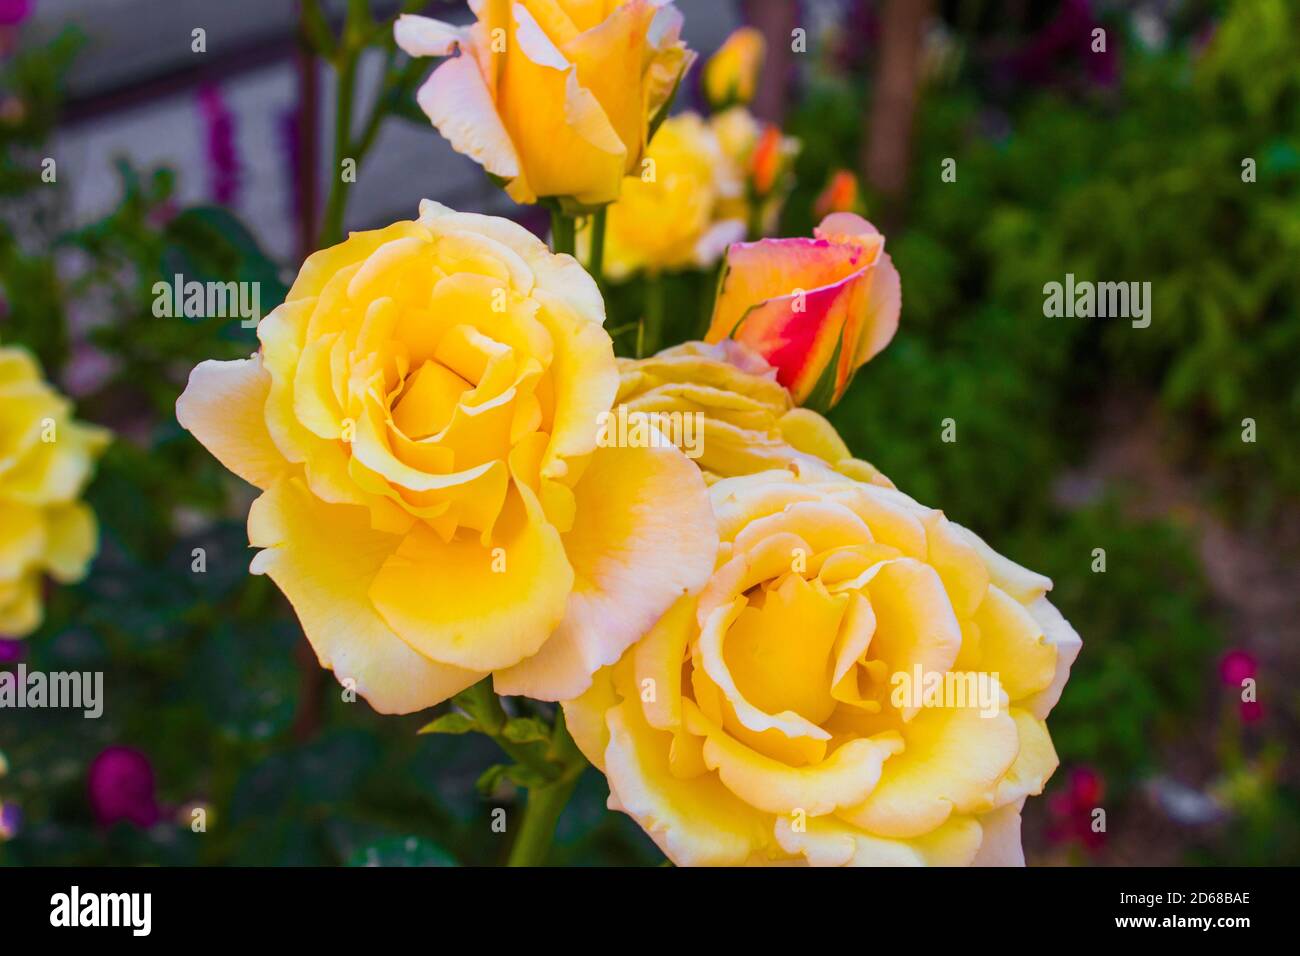 C'est une rose jaune dans le jardin Banque D'Images